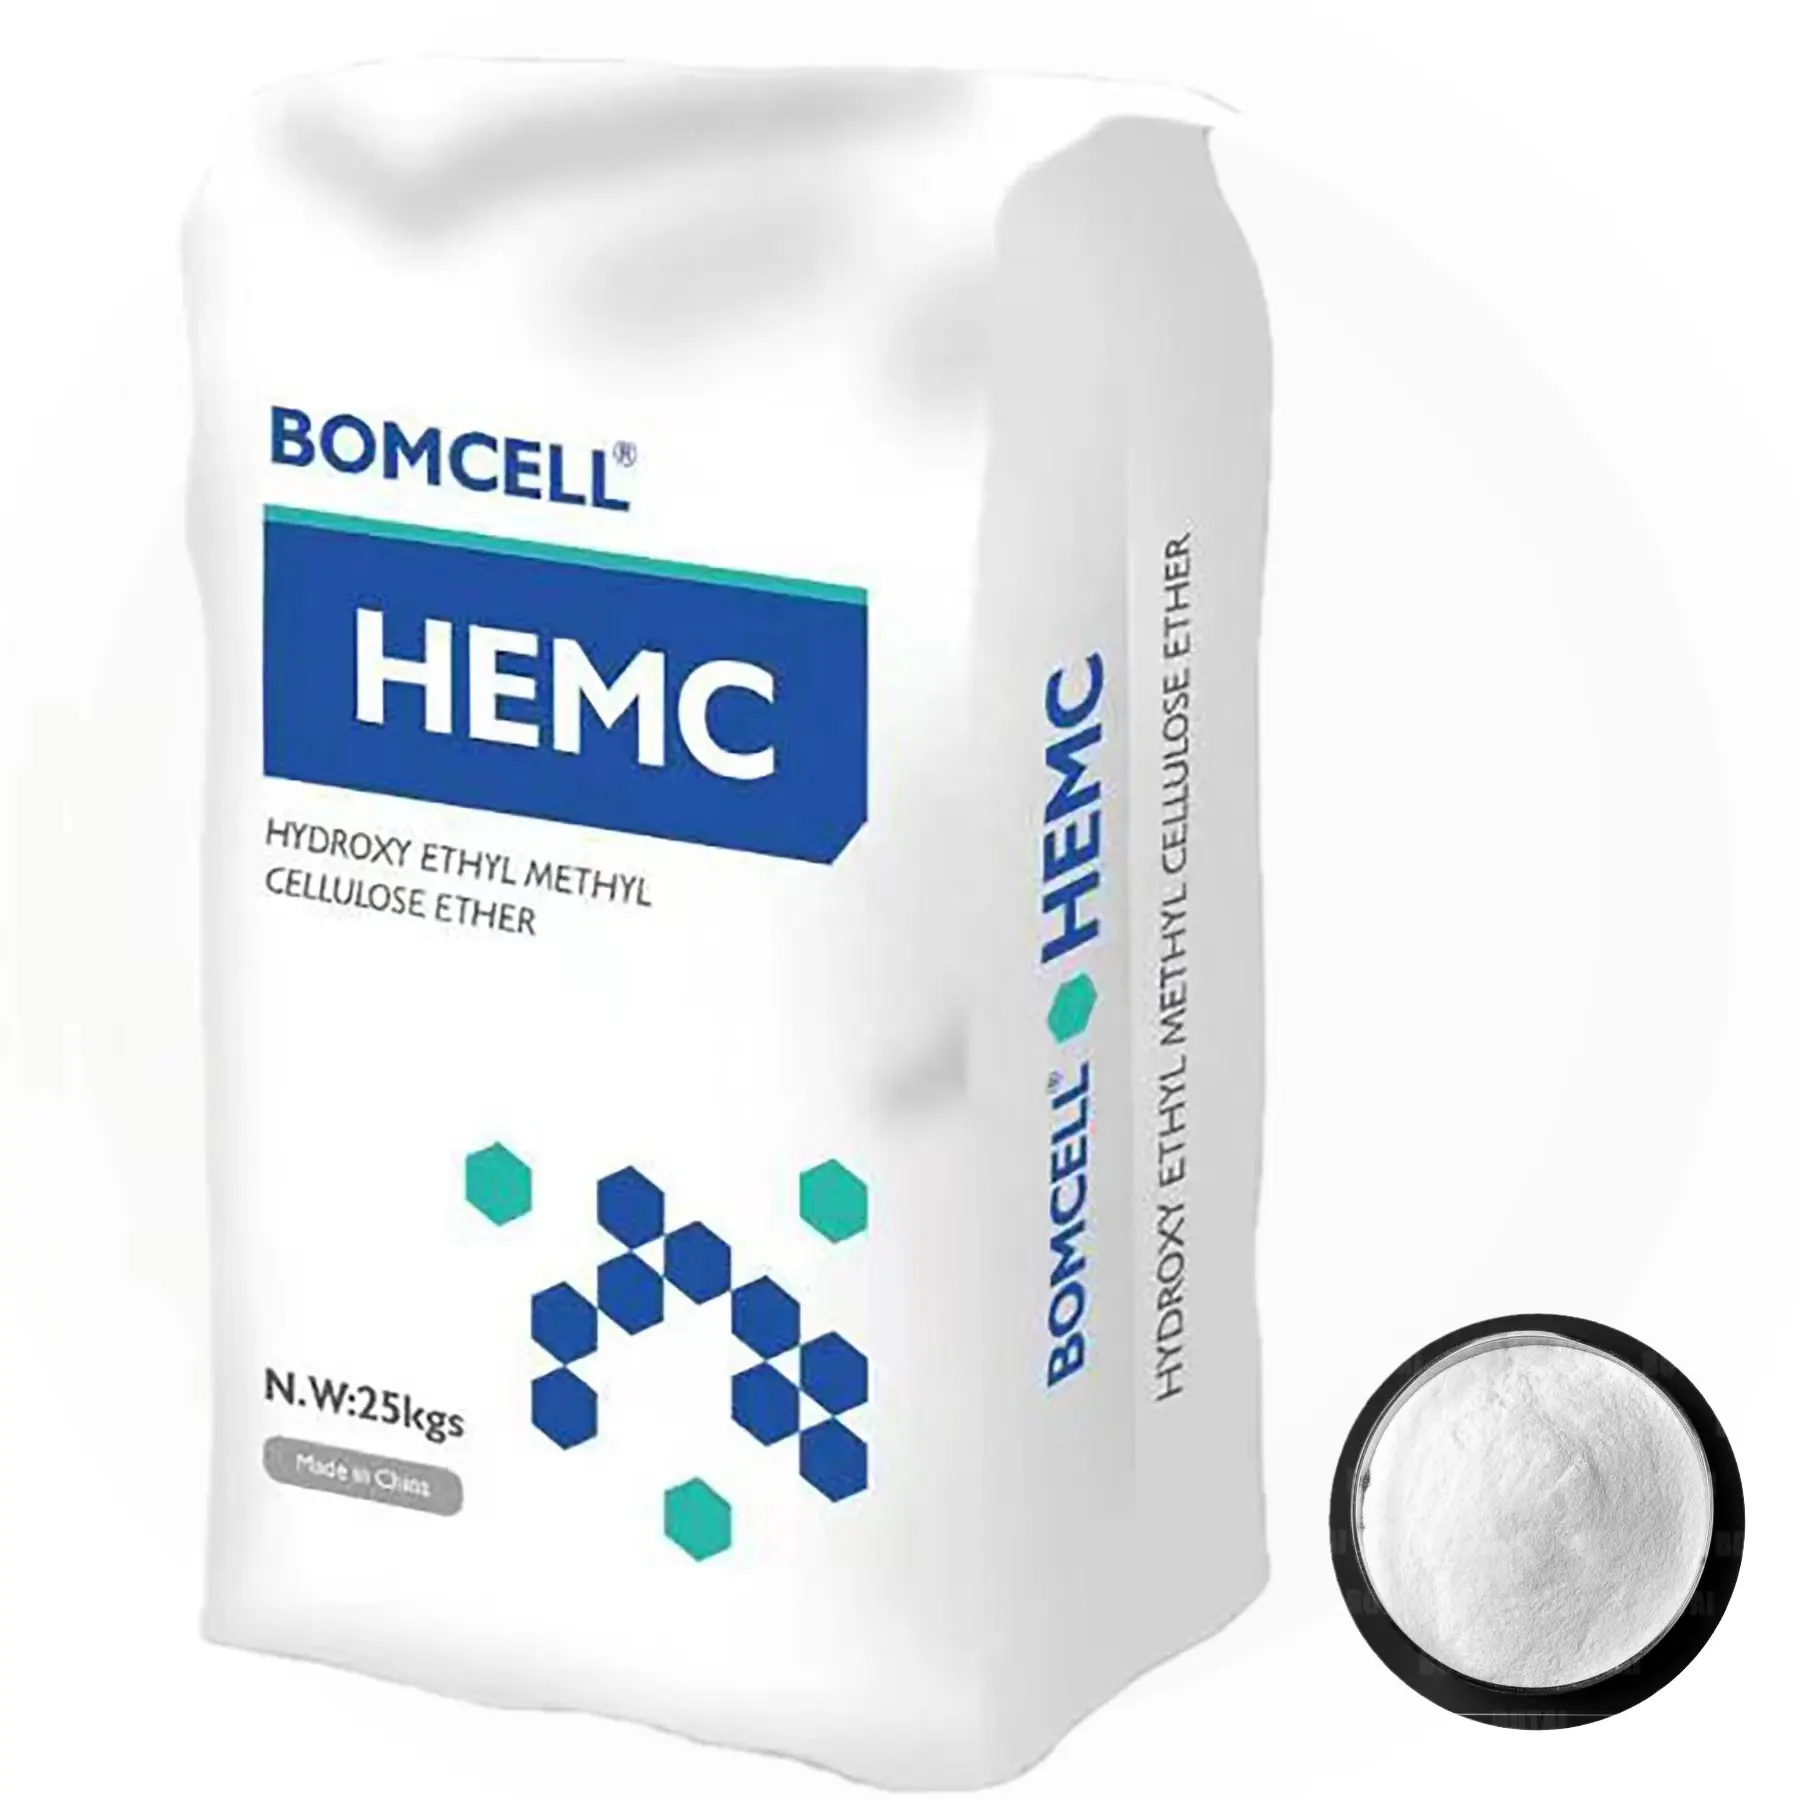 สารเคลือบเสริมสารเติมแต่งปิโตรเลียมสารลดแรงตึงผิว mhec สารเคมี HEMC ไฮดรอกซีไทลเมทิลเซลลูโลส (Hemc)